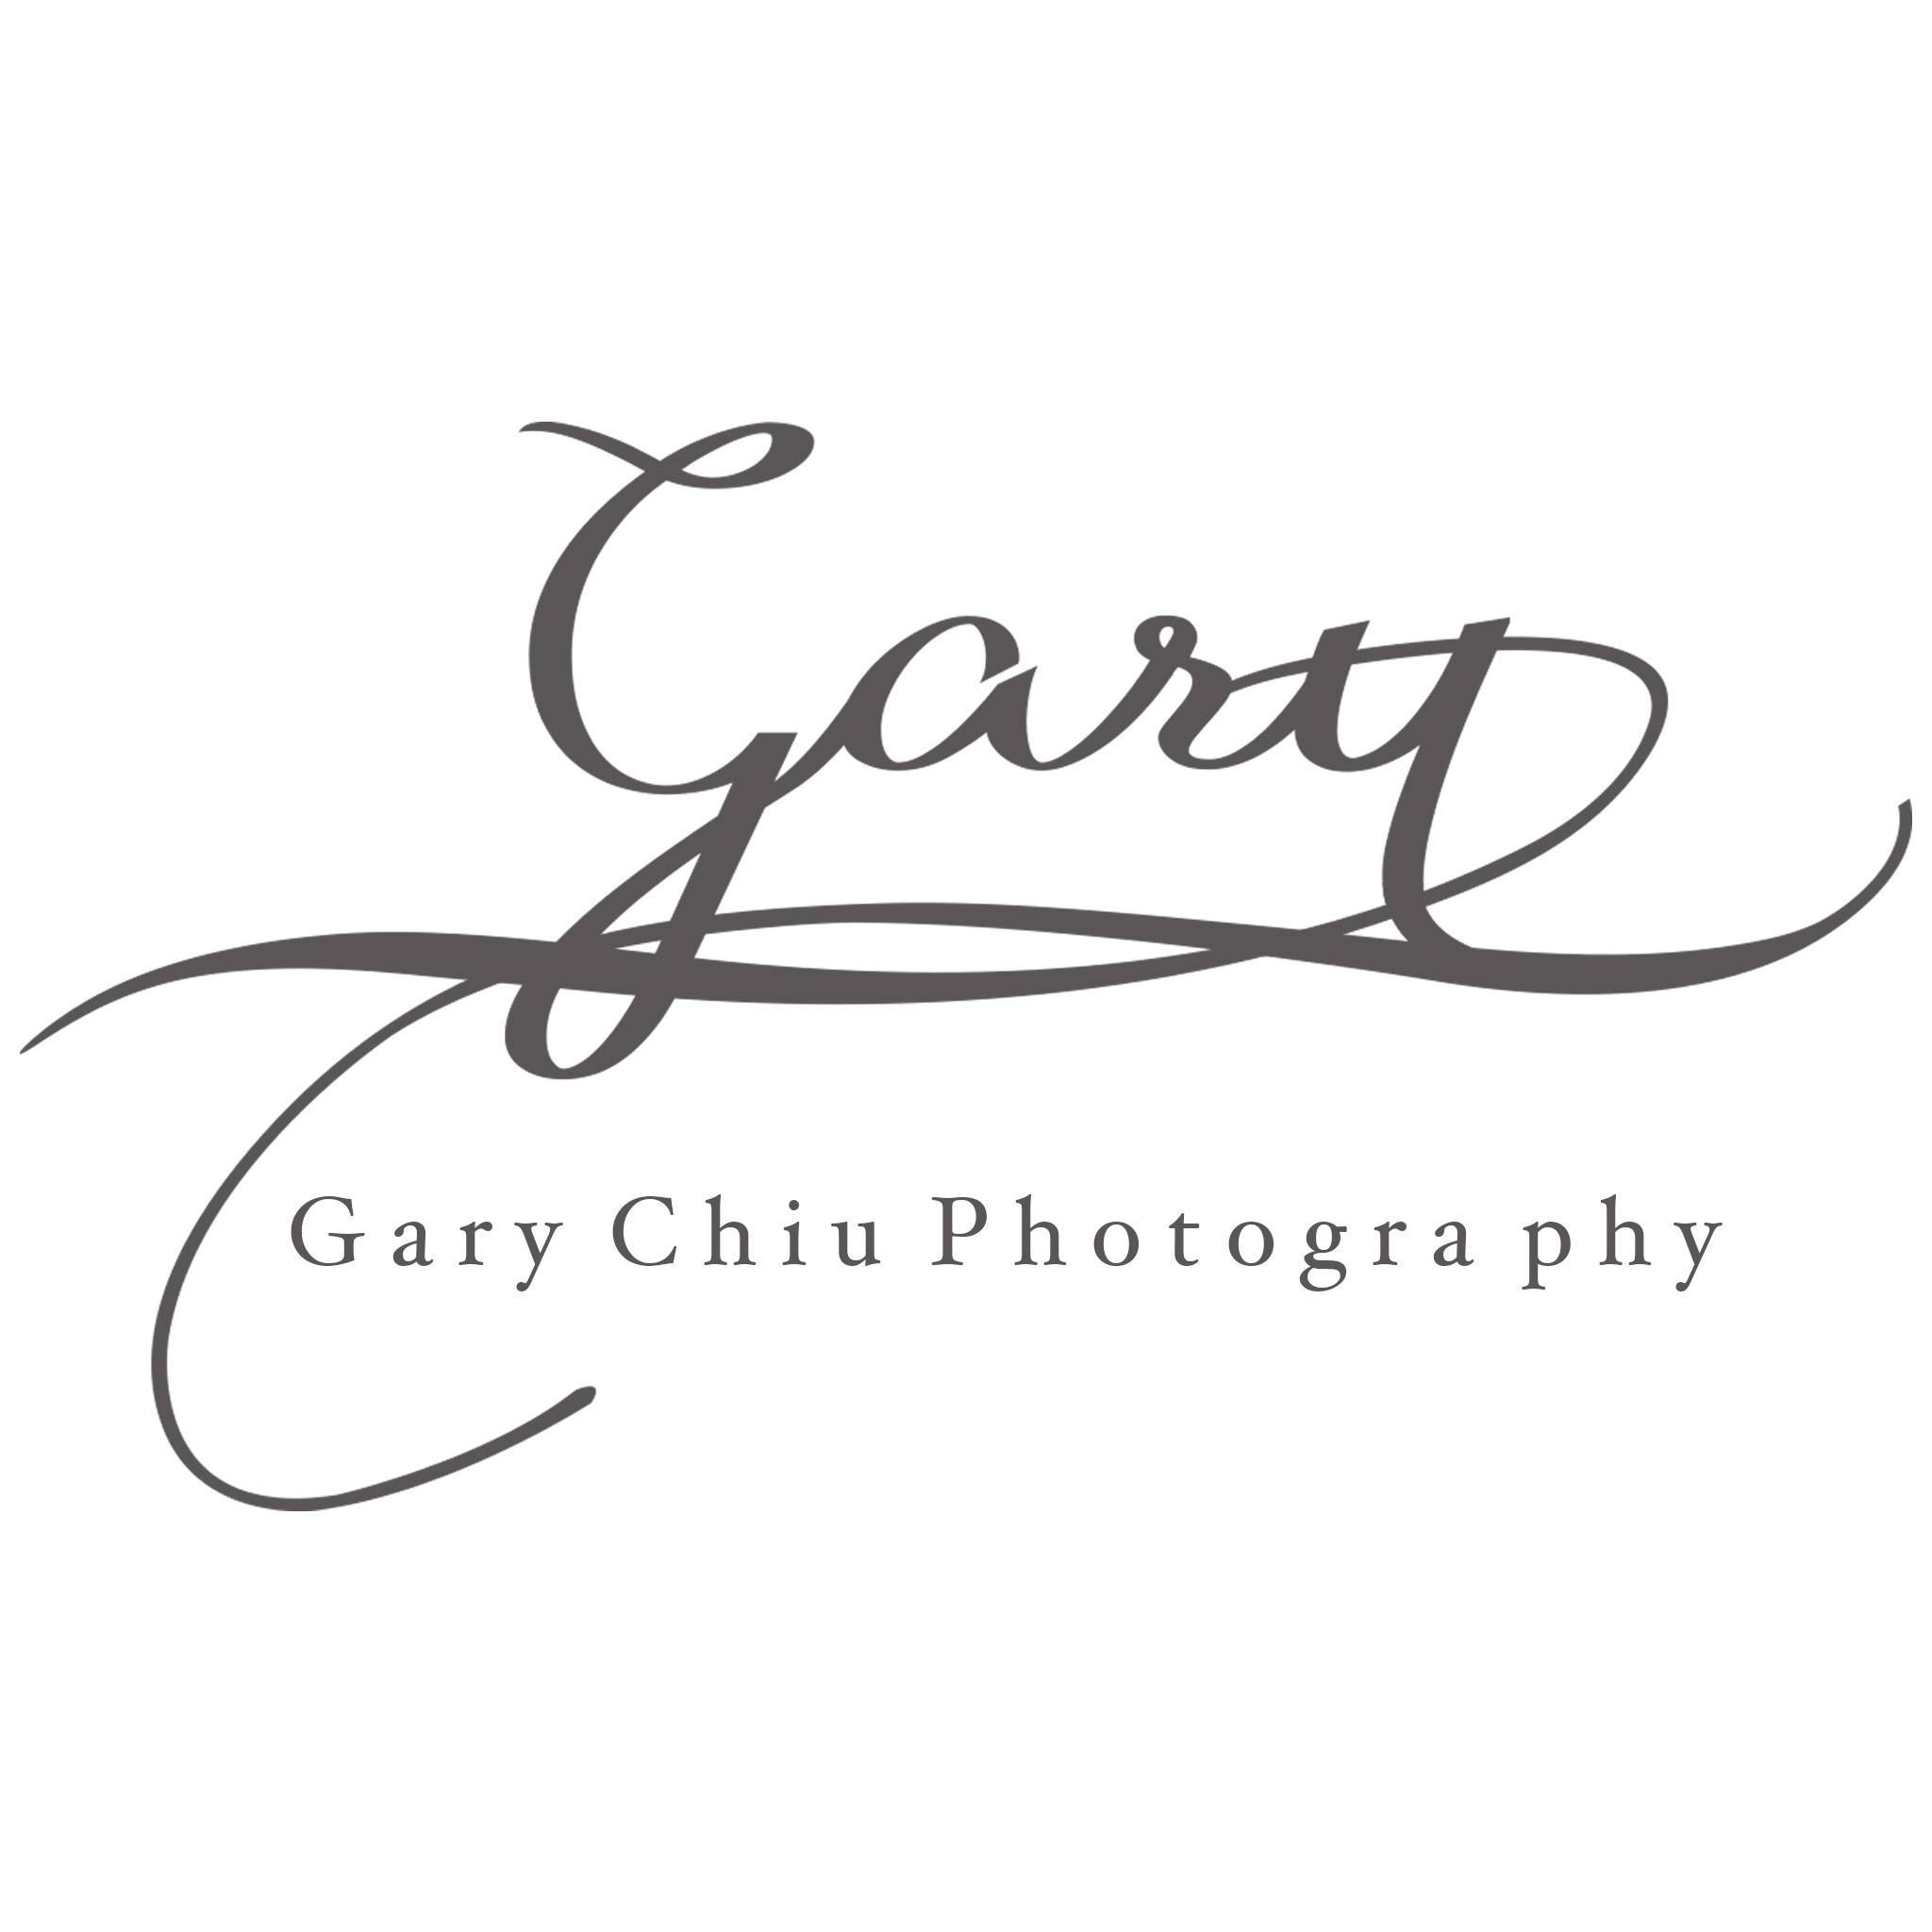 Gary Chiu Photography